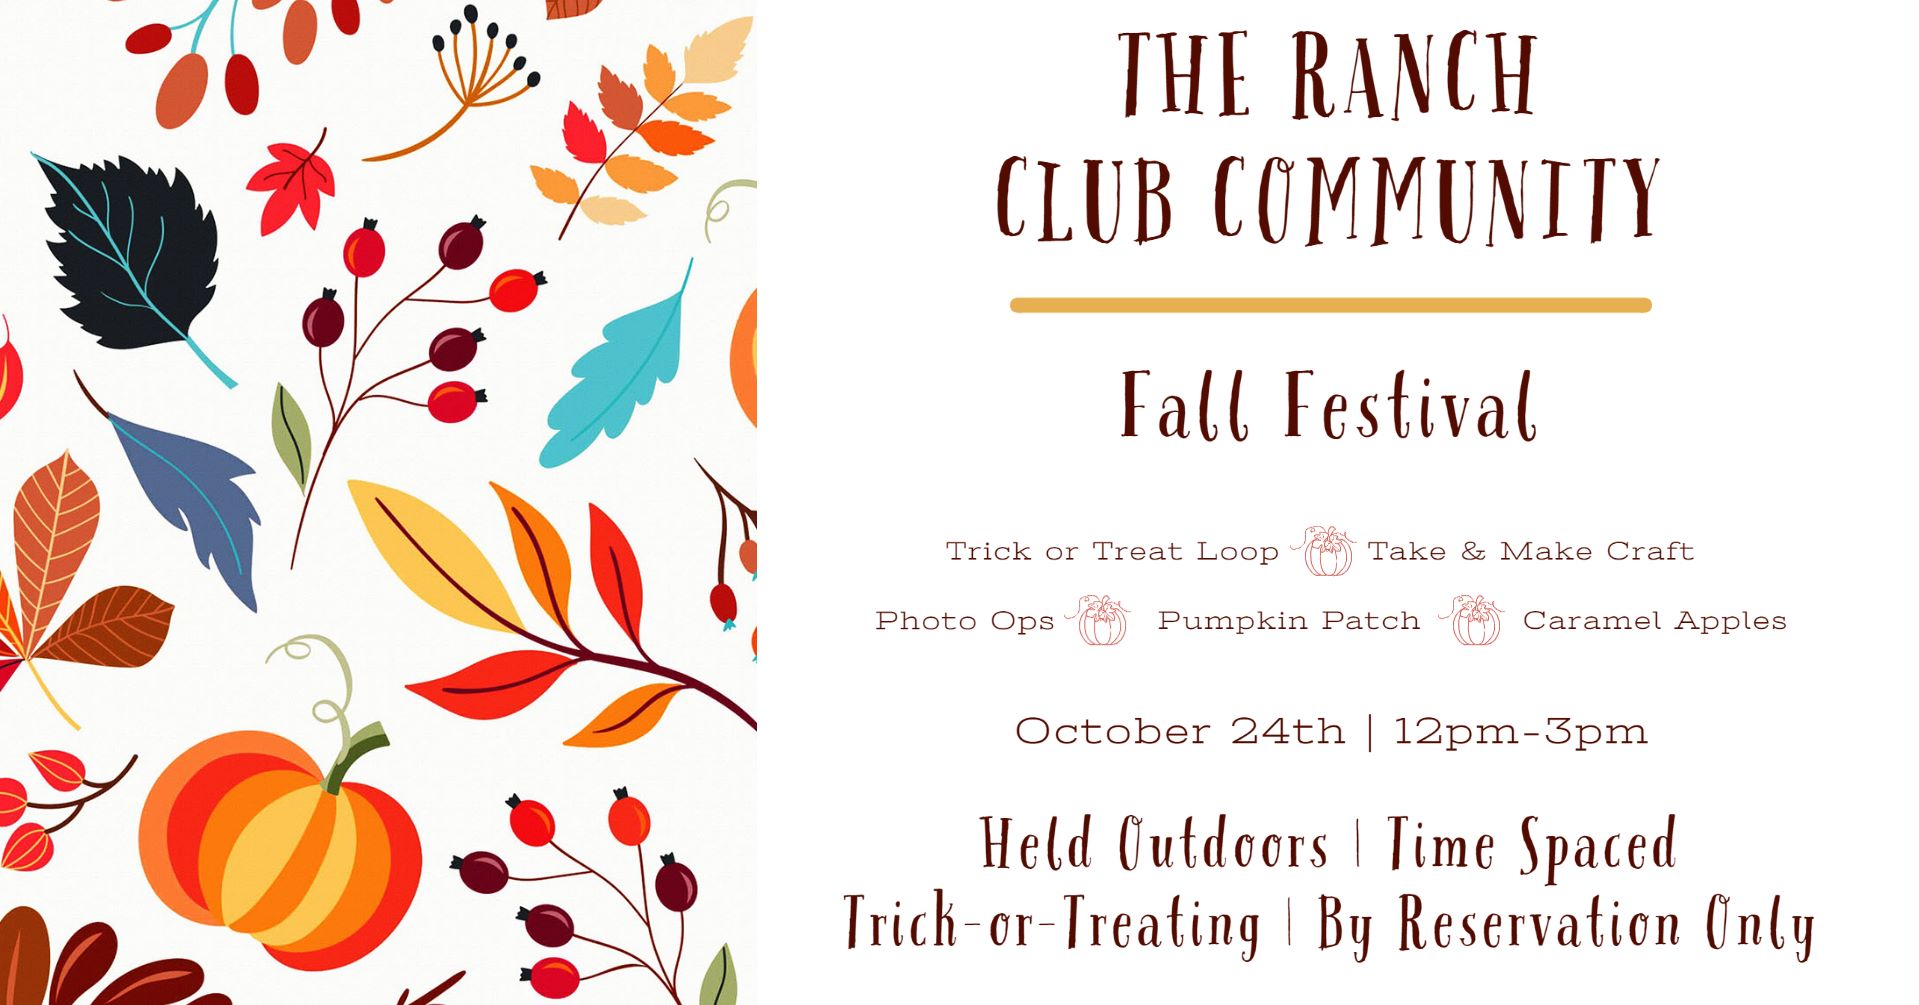 The Ranch Club Community Fall Festival